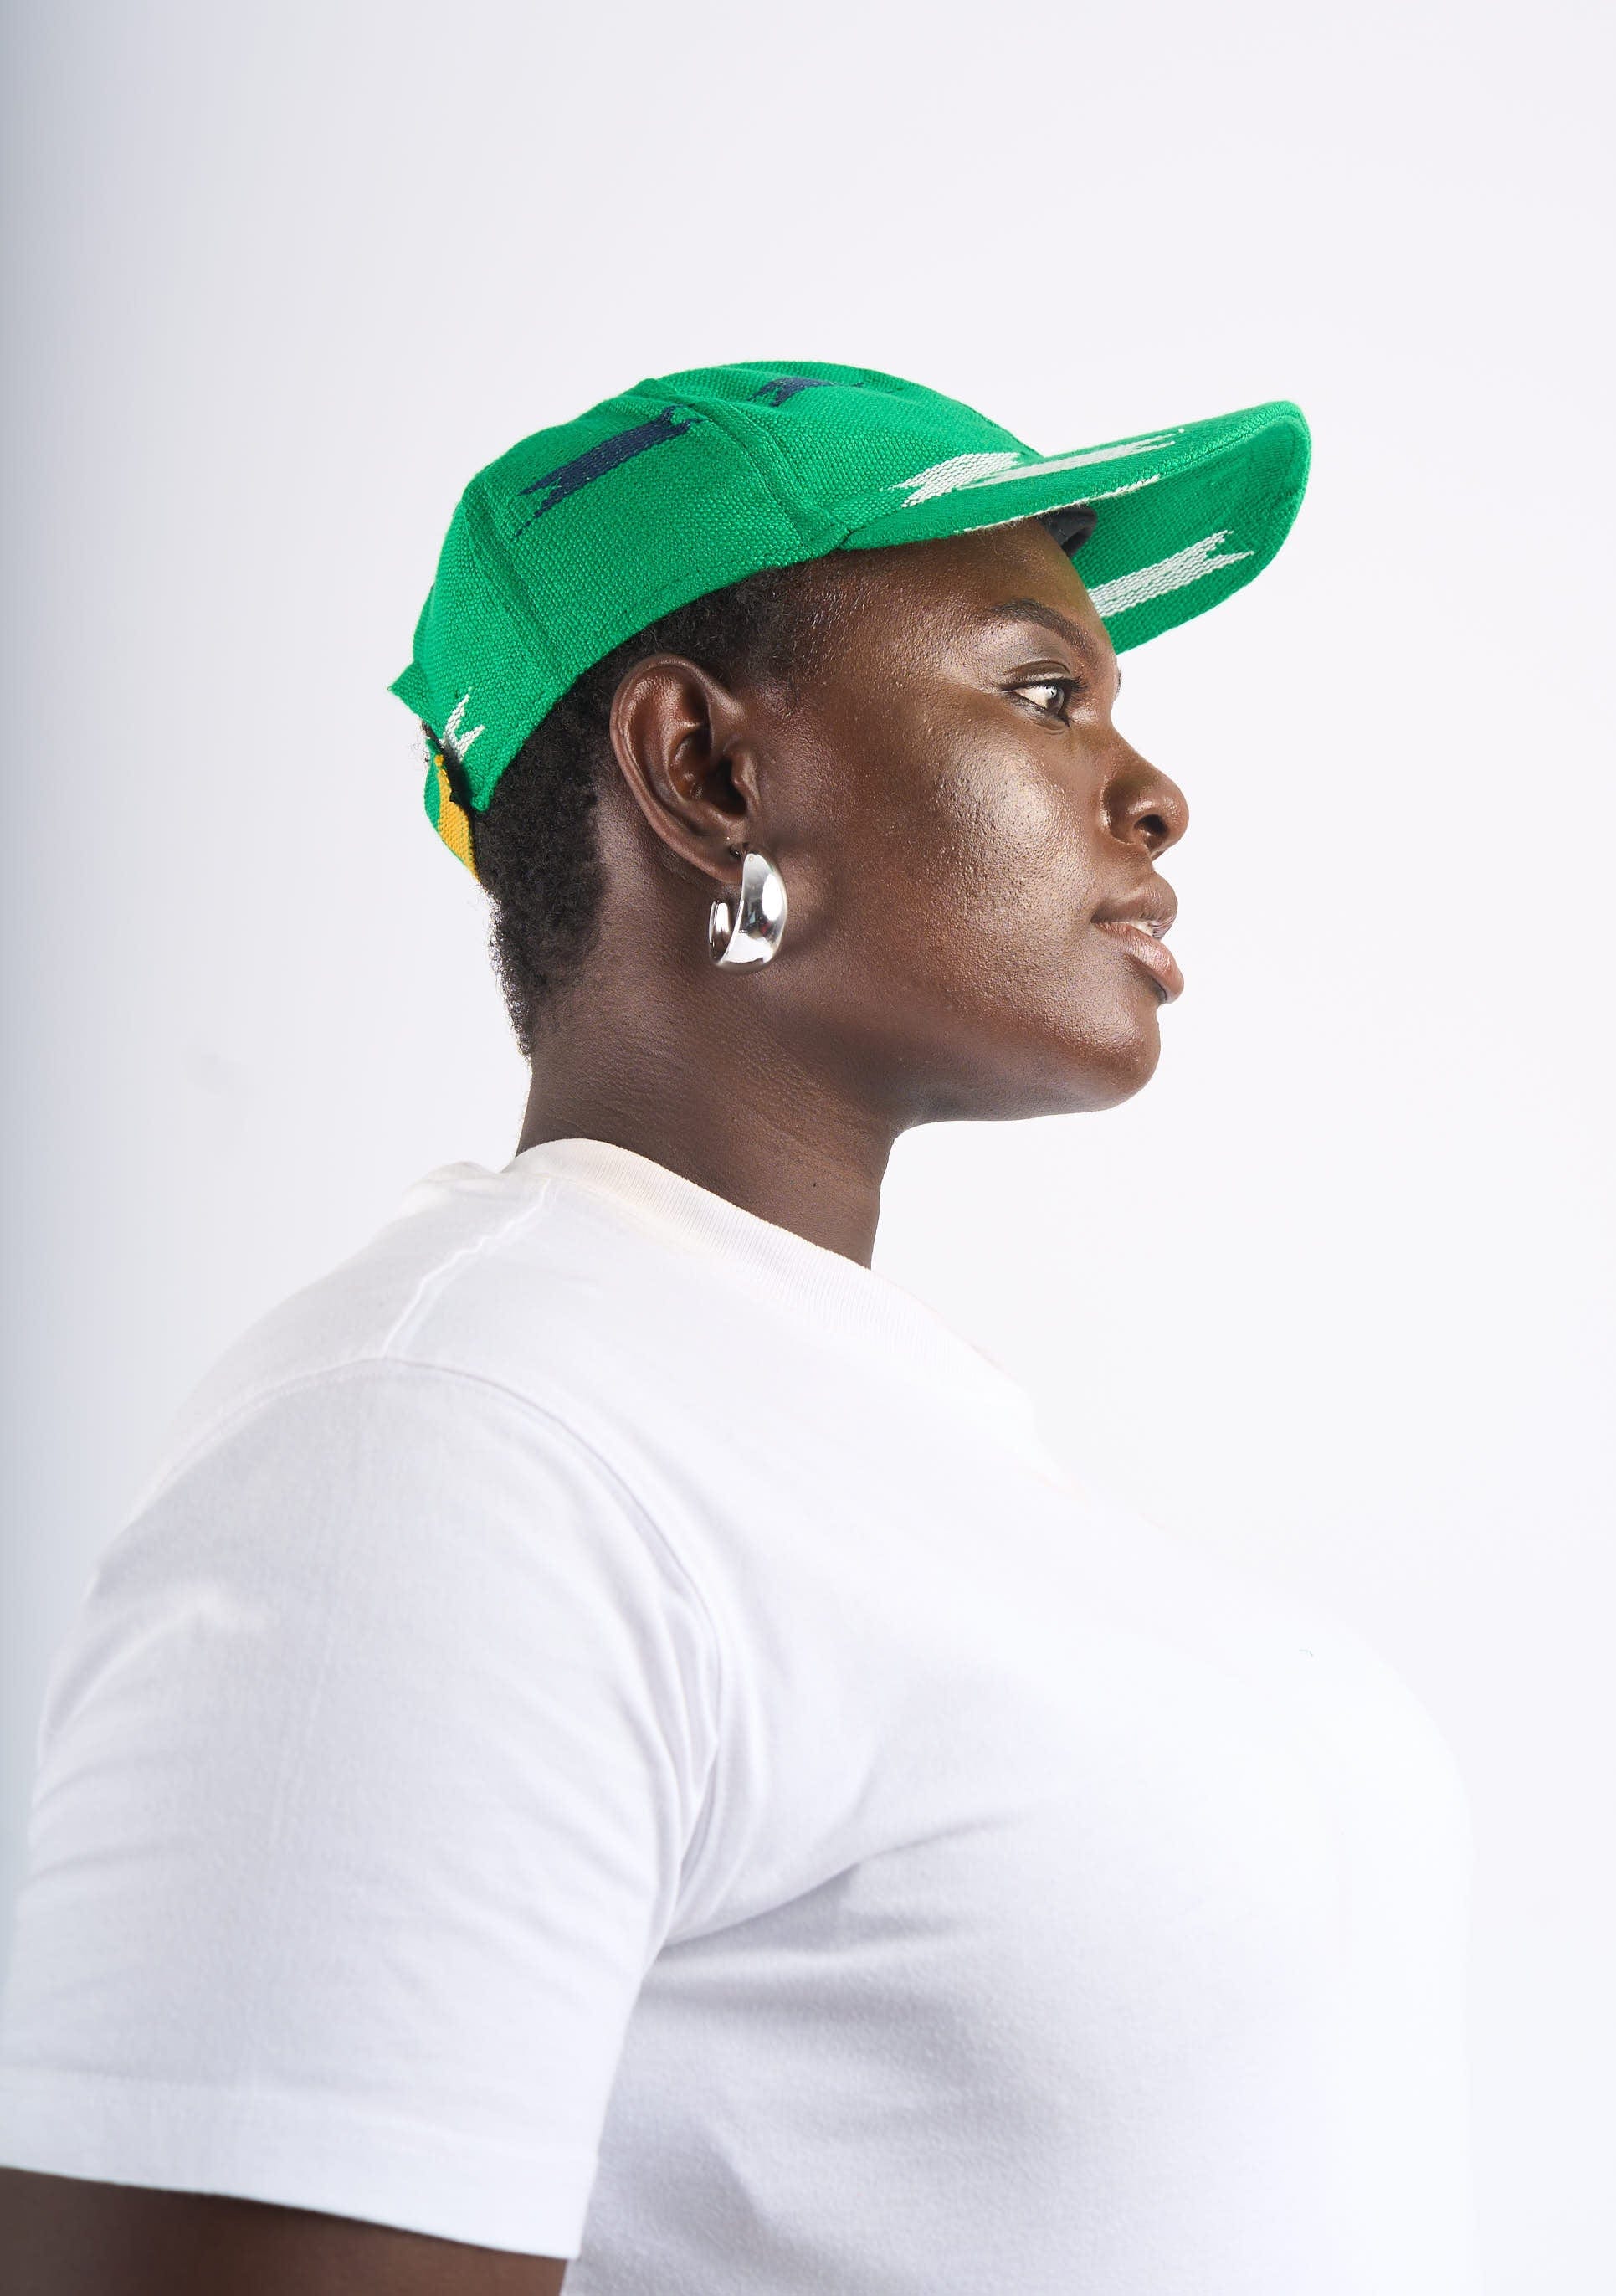 YEVU Accessories - Headwear Kente Cap - Green Stars